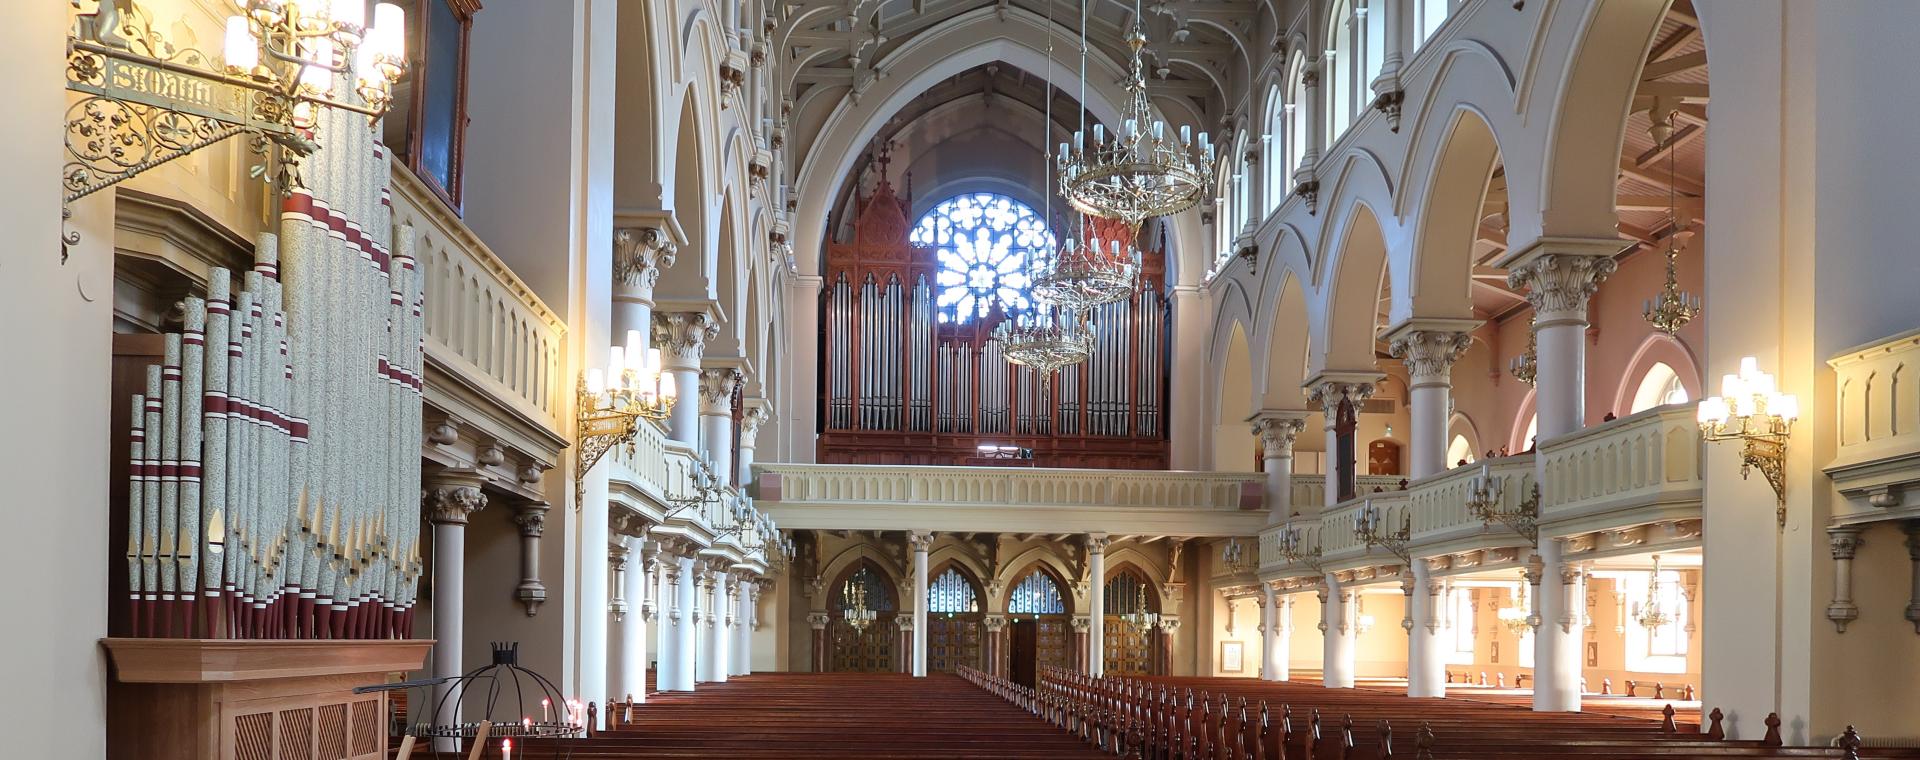 Bild på Johanneskyrkans orglar tagen framme i kyrkan av Bettina Stenbäck